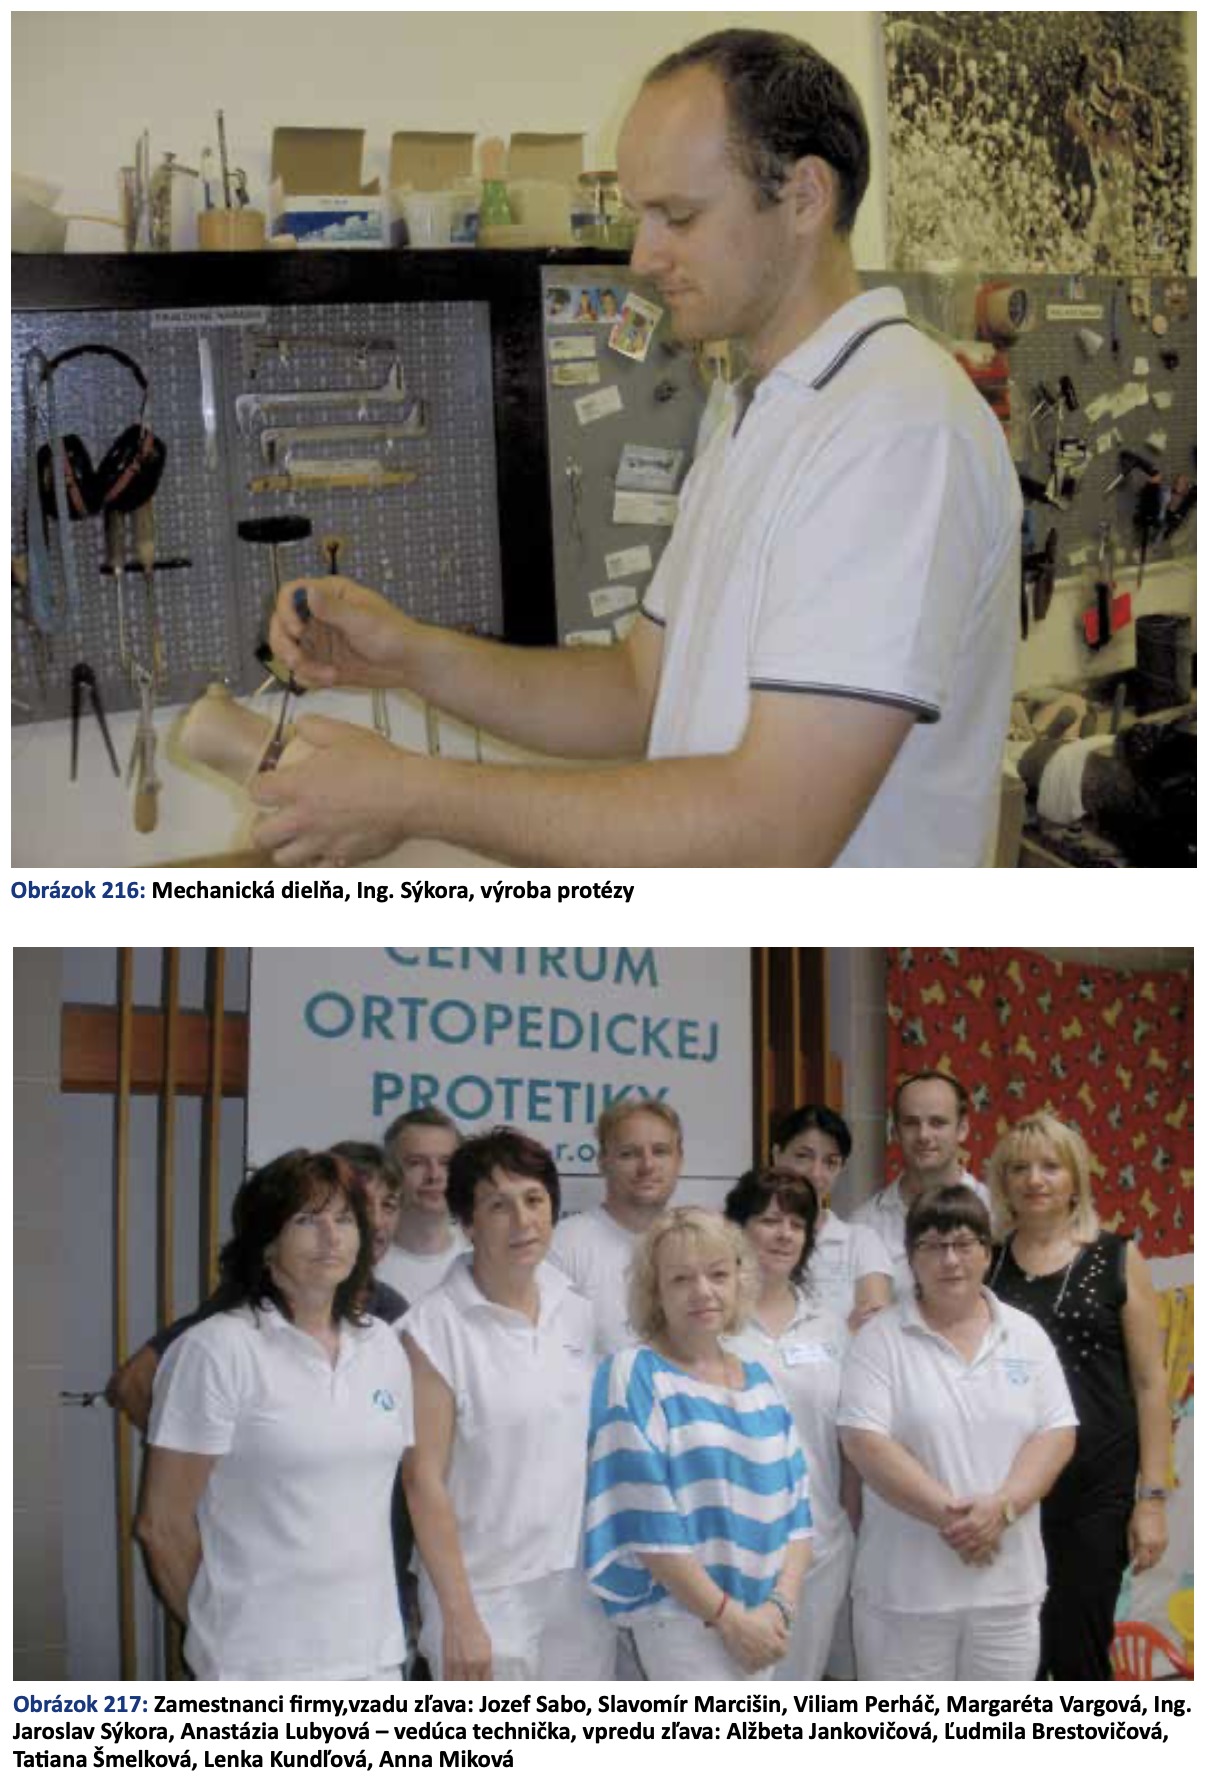  Technicko-výrobné pracoviská v ortopedickej protetike Centrum ortopedickej protetiky